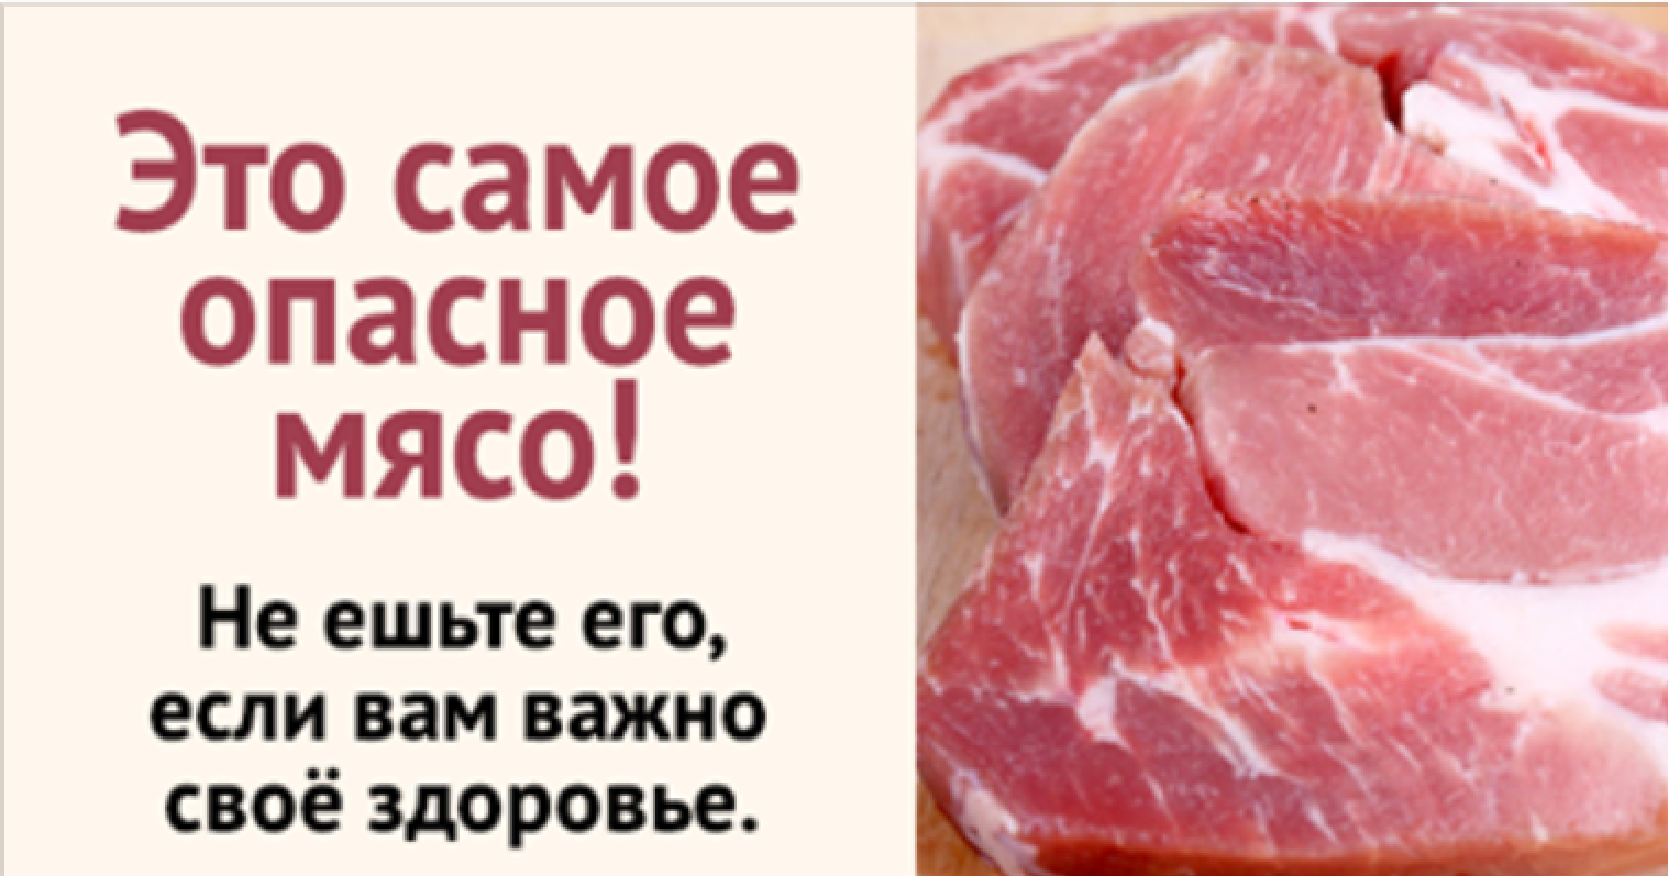 Мясо свинину можно есть. Полезность мяса. Свинина опасна для здоровья.